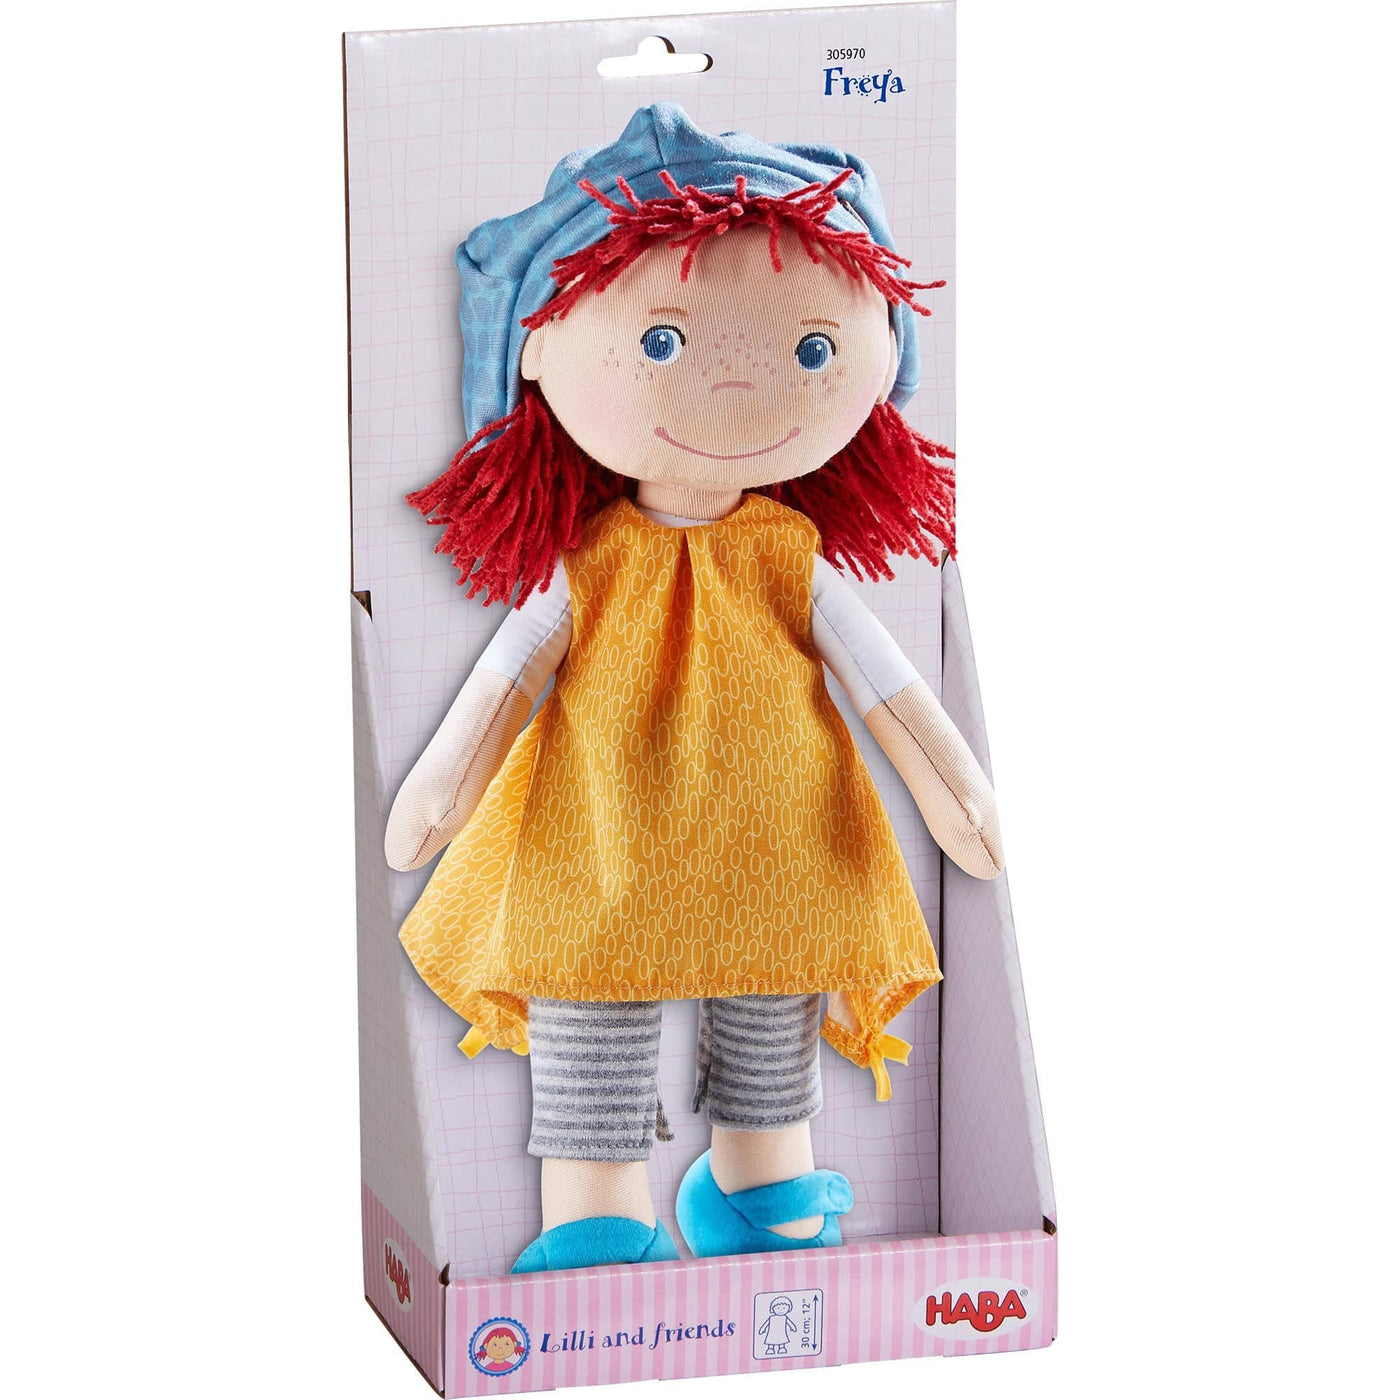 Freya 12" Soft Doll - HABA USA